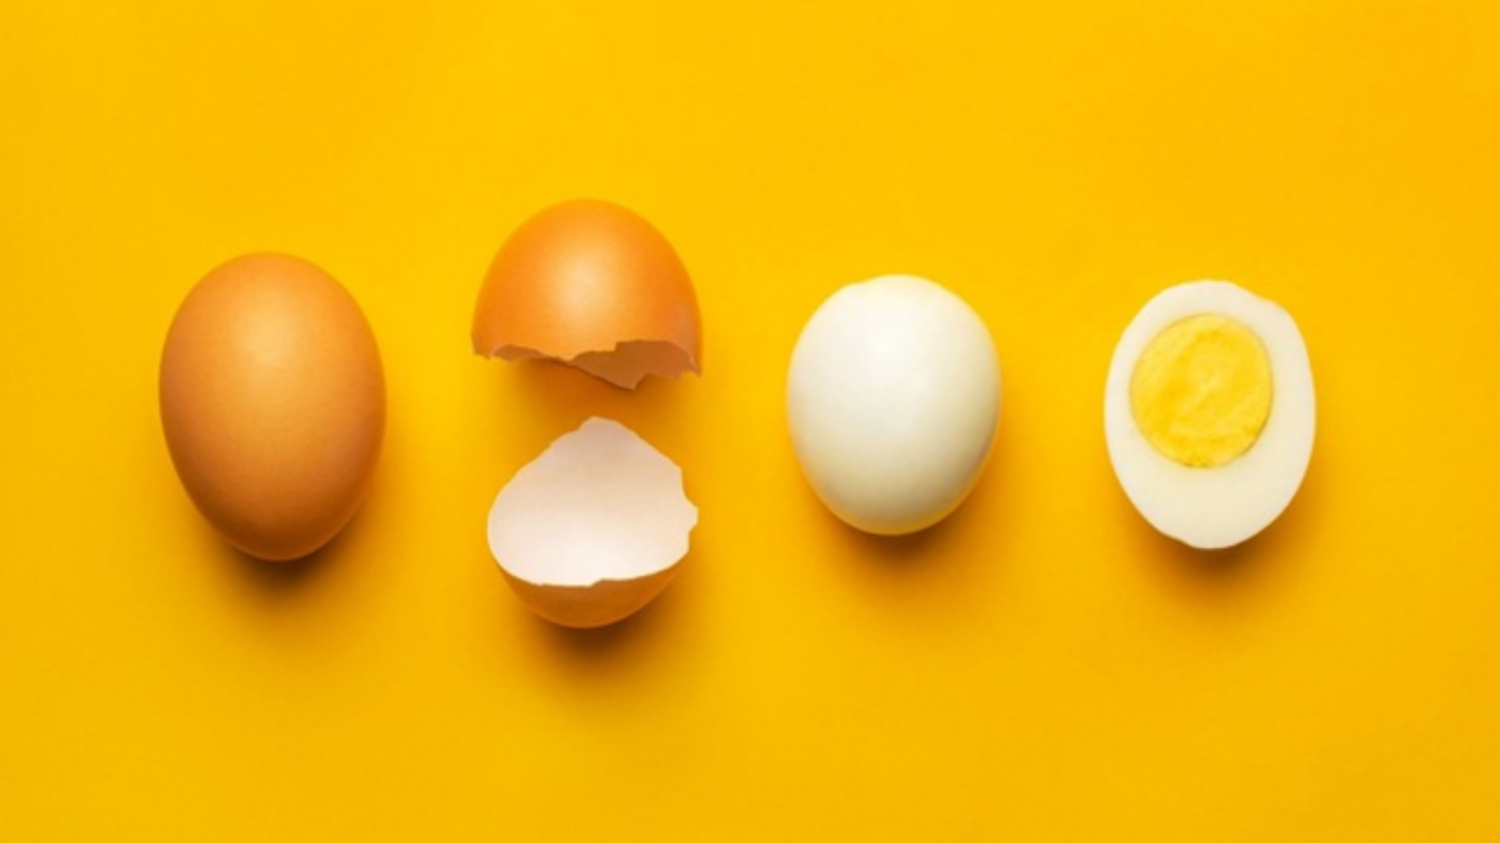 Trứng là thực phẩm chứa khoảng 90 calo, hỗ trợ quá trình tăng cân